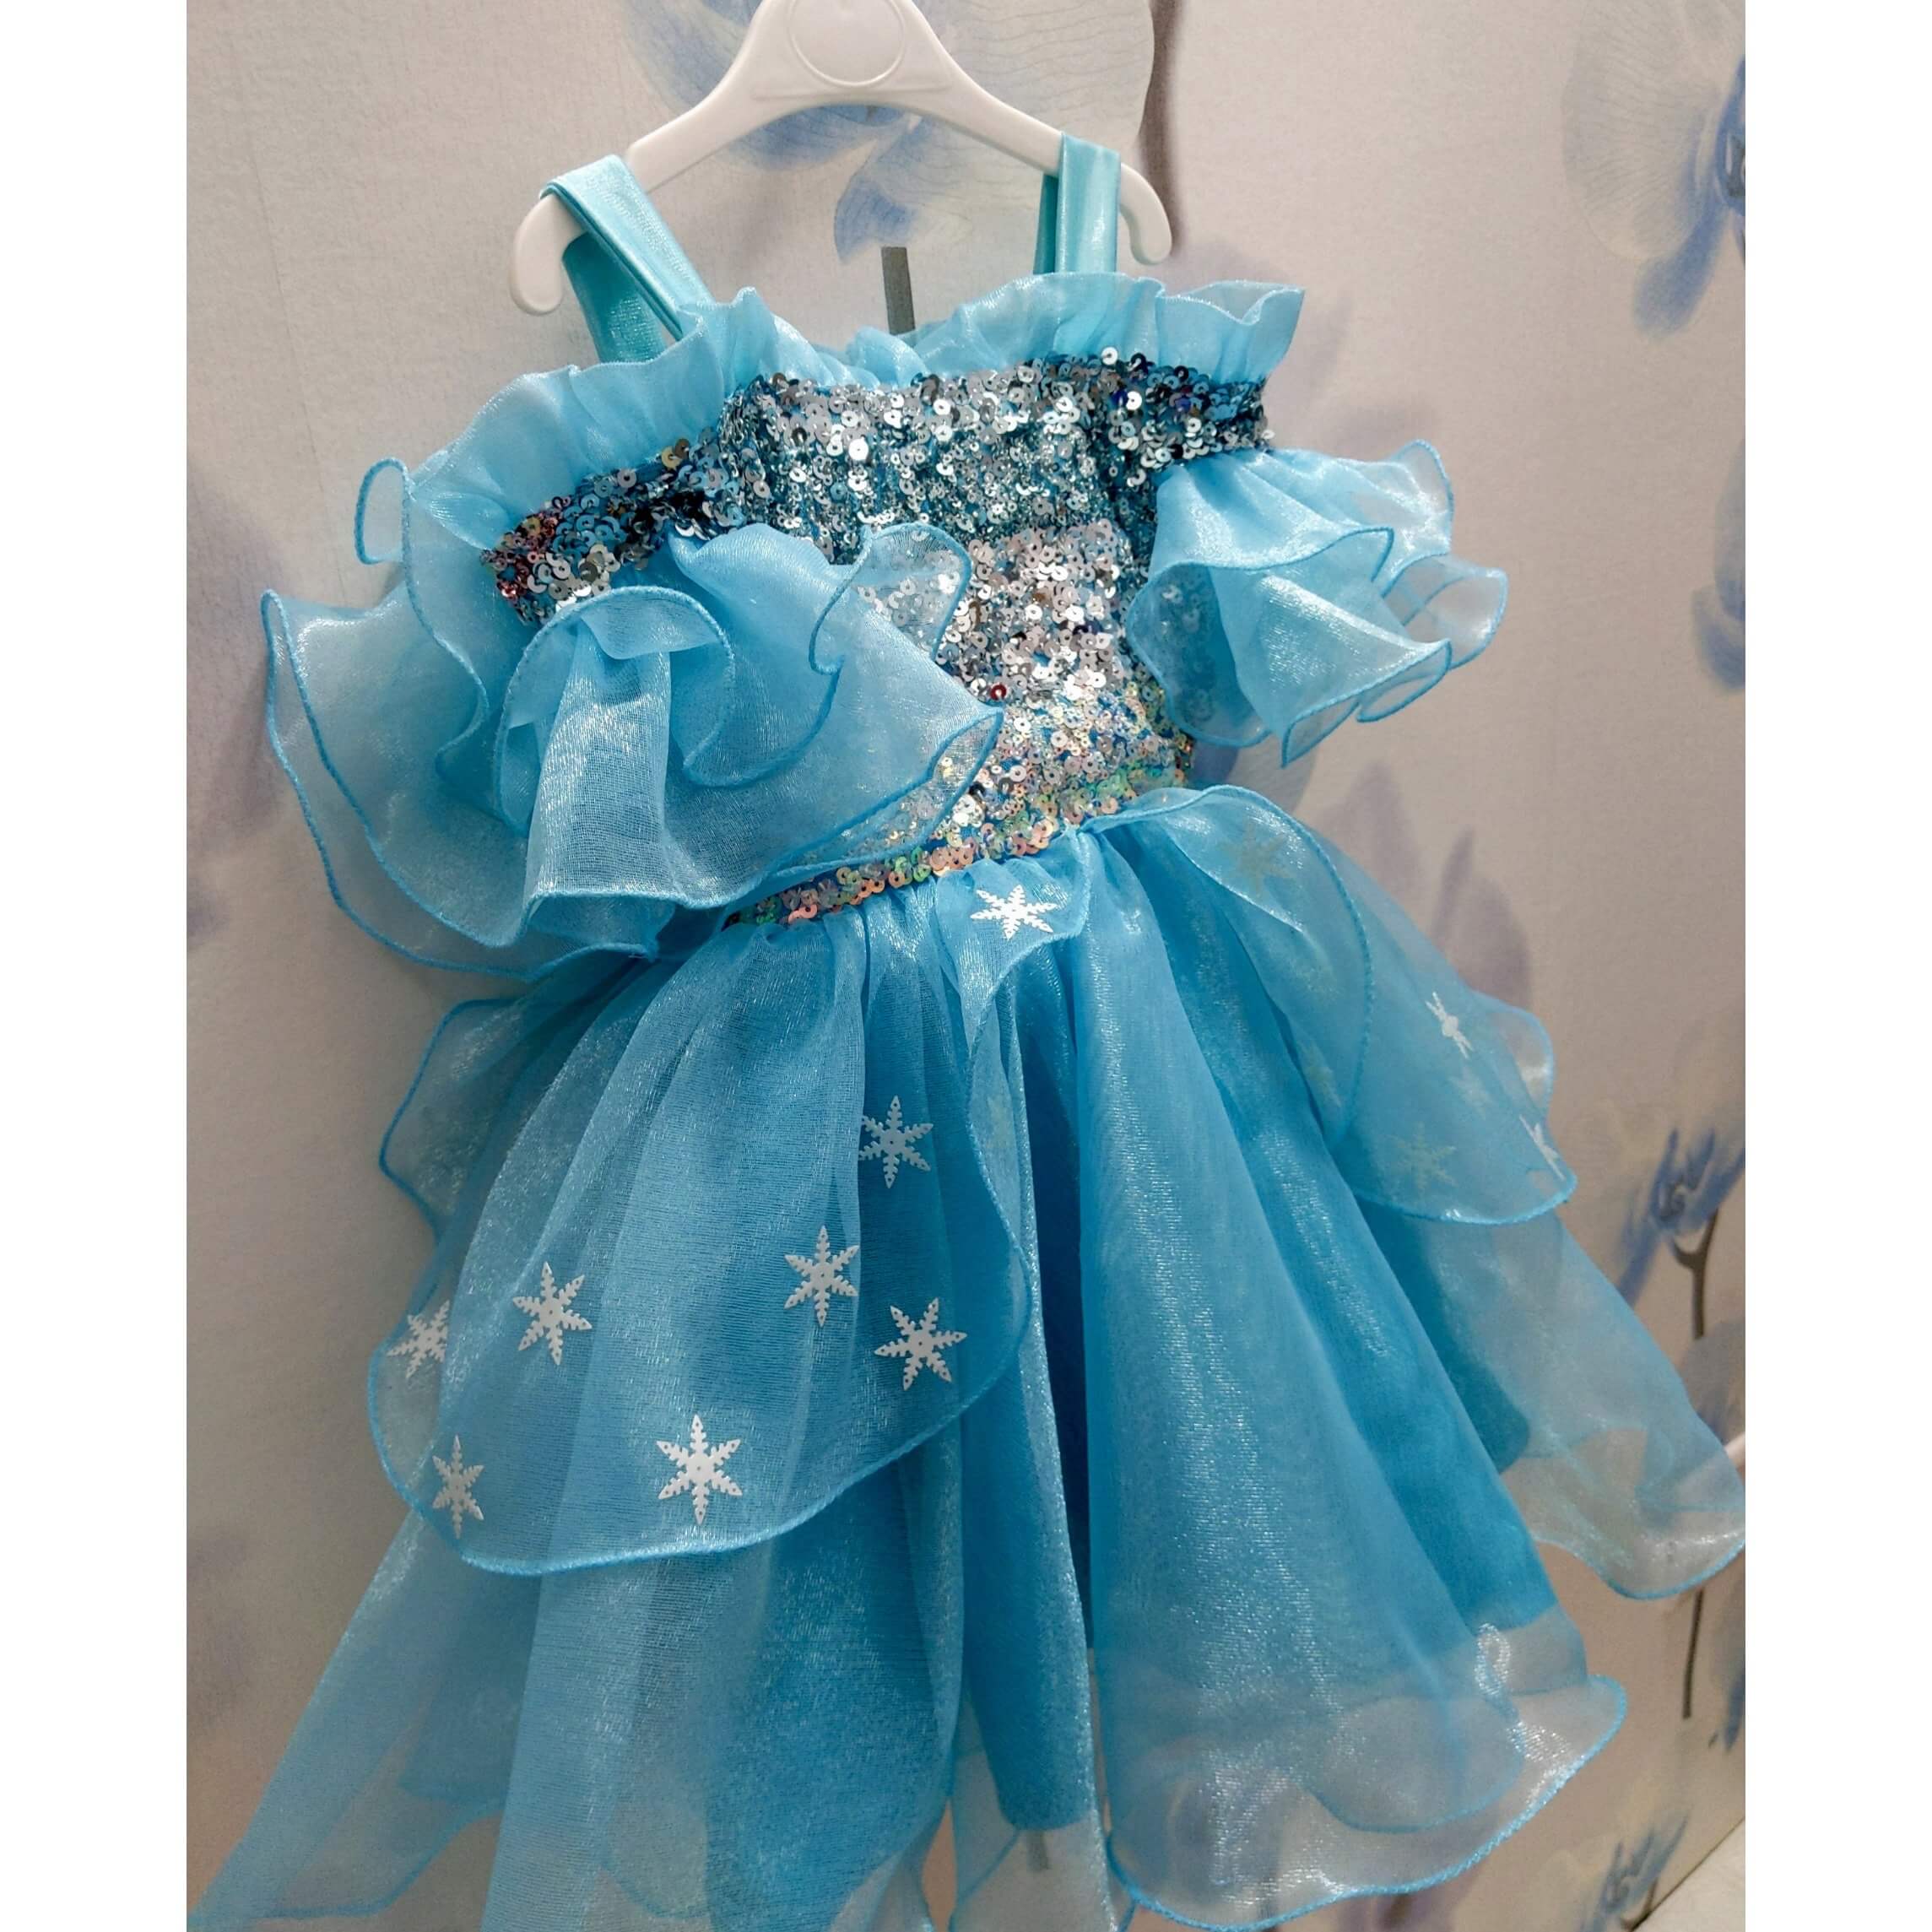 Elsa Costume for Kids – Frozen | Disney Store